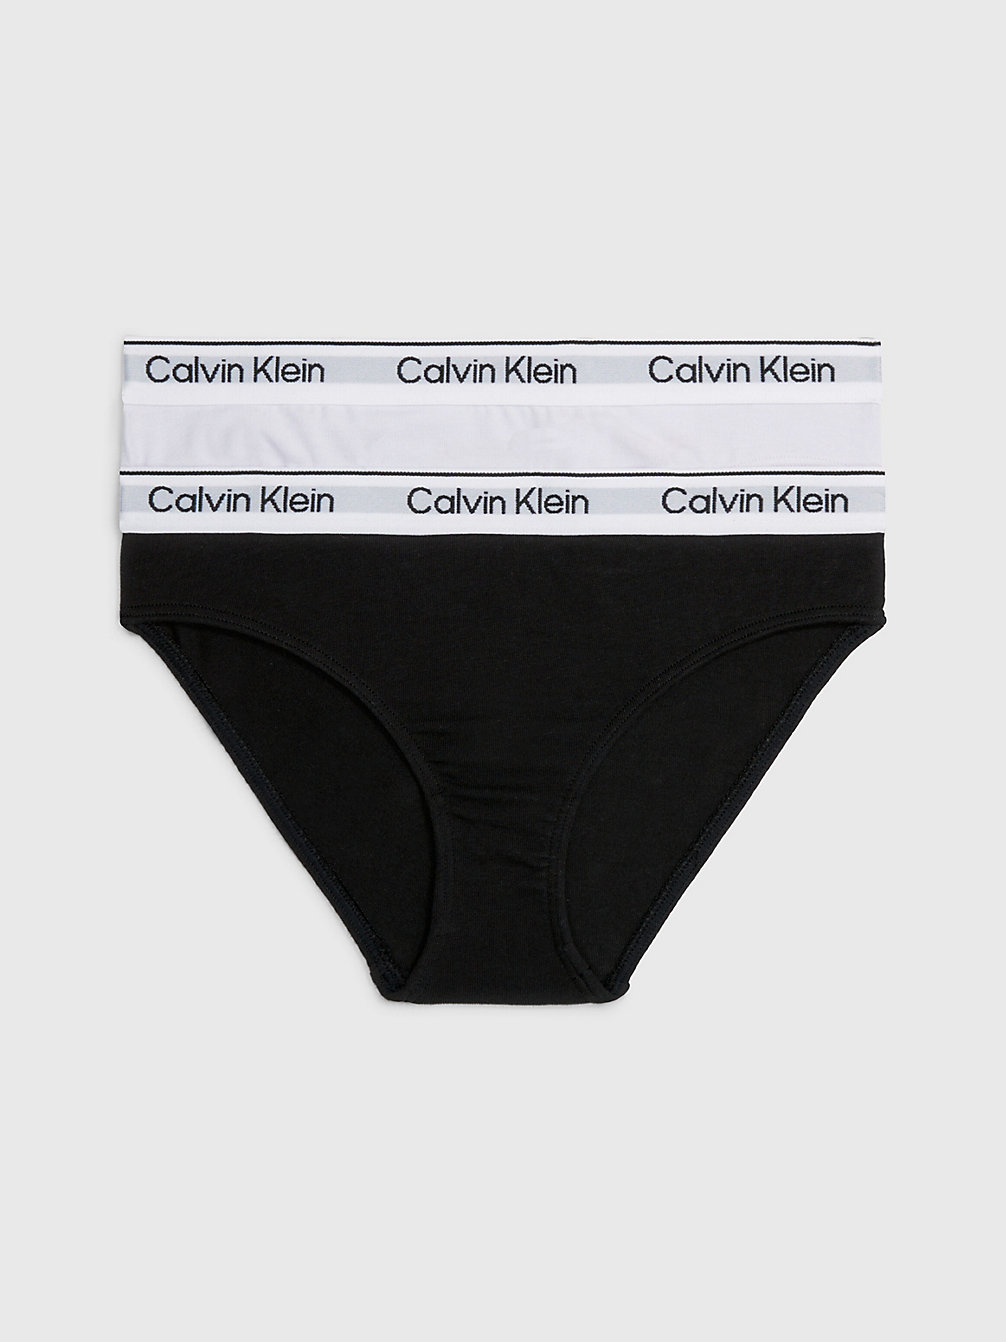 LAVENDERSPLASH/PVHBLACK Lot De 2 Culottes Pour Fille - Modern Cotton undefined filles Calvin Klein